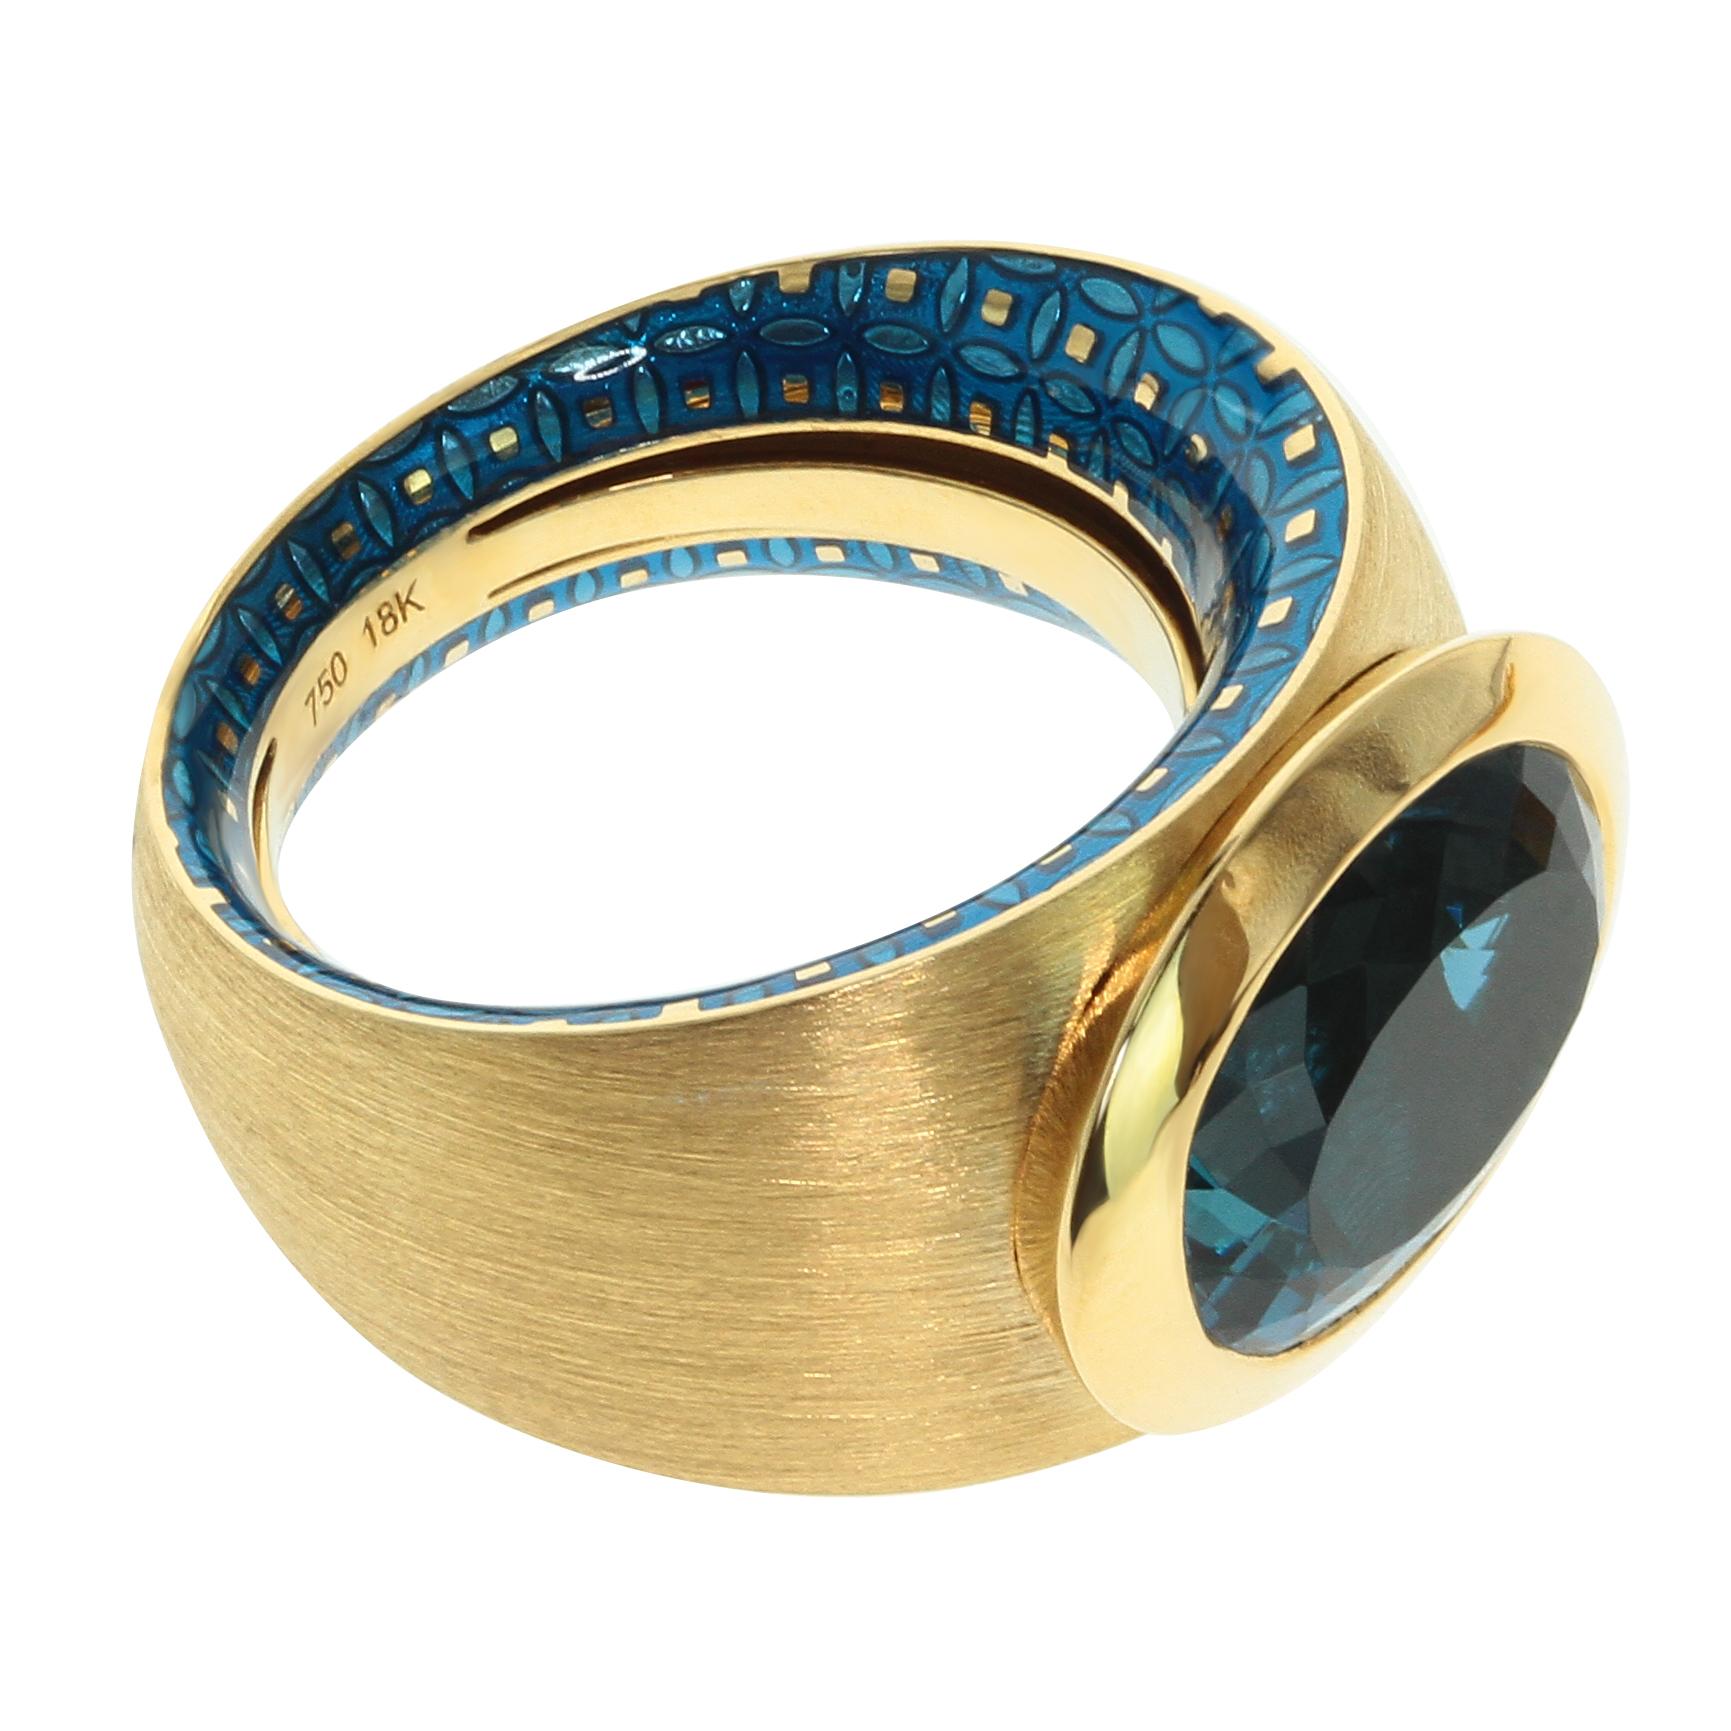 Kaleidoskop-Ring aus 18 Karat Gelbgold mit blauem Topas und farbiger Emaille

Werfen Sie einen Blick auf eine unserer Markentexturen in der Kaleidoscope Collection - 